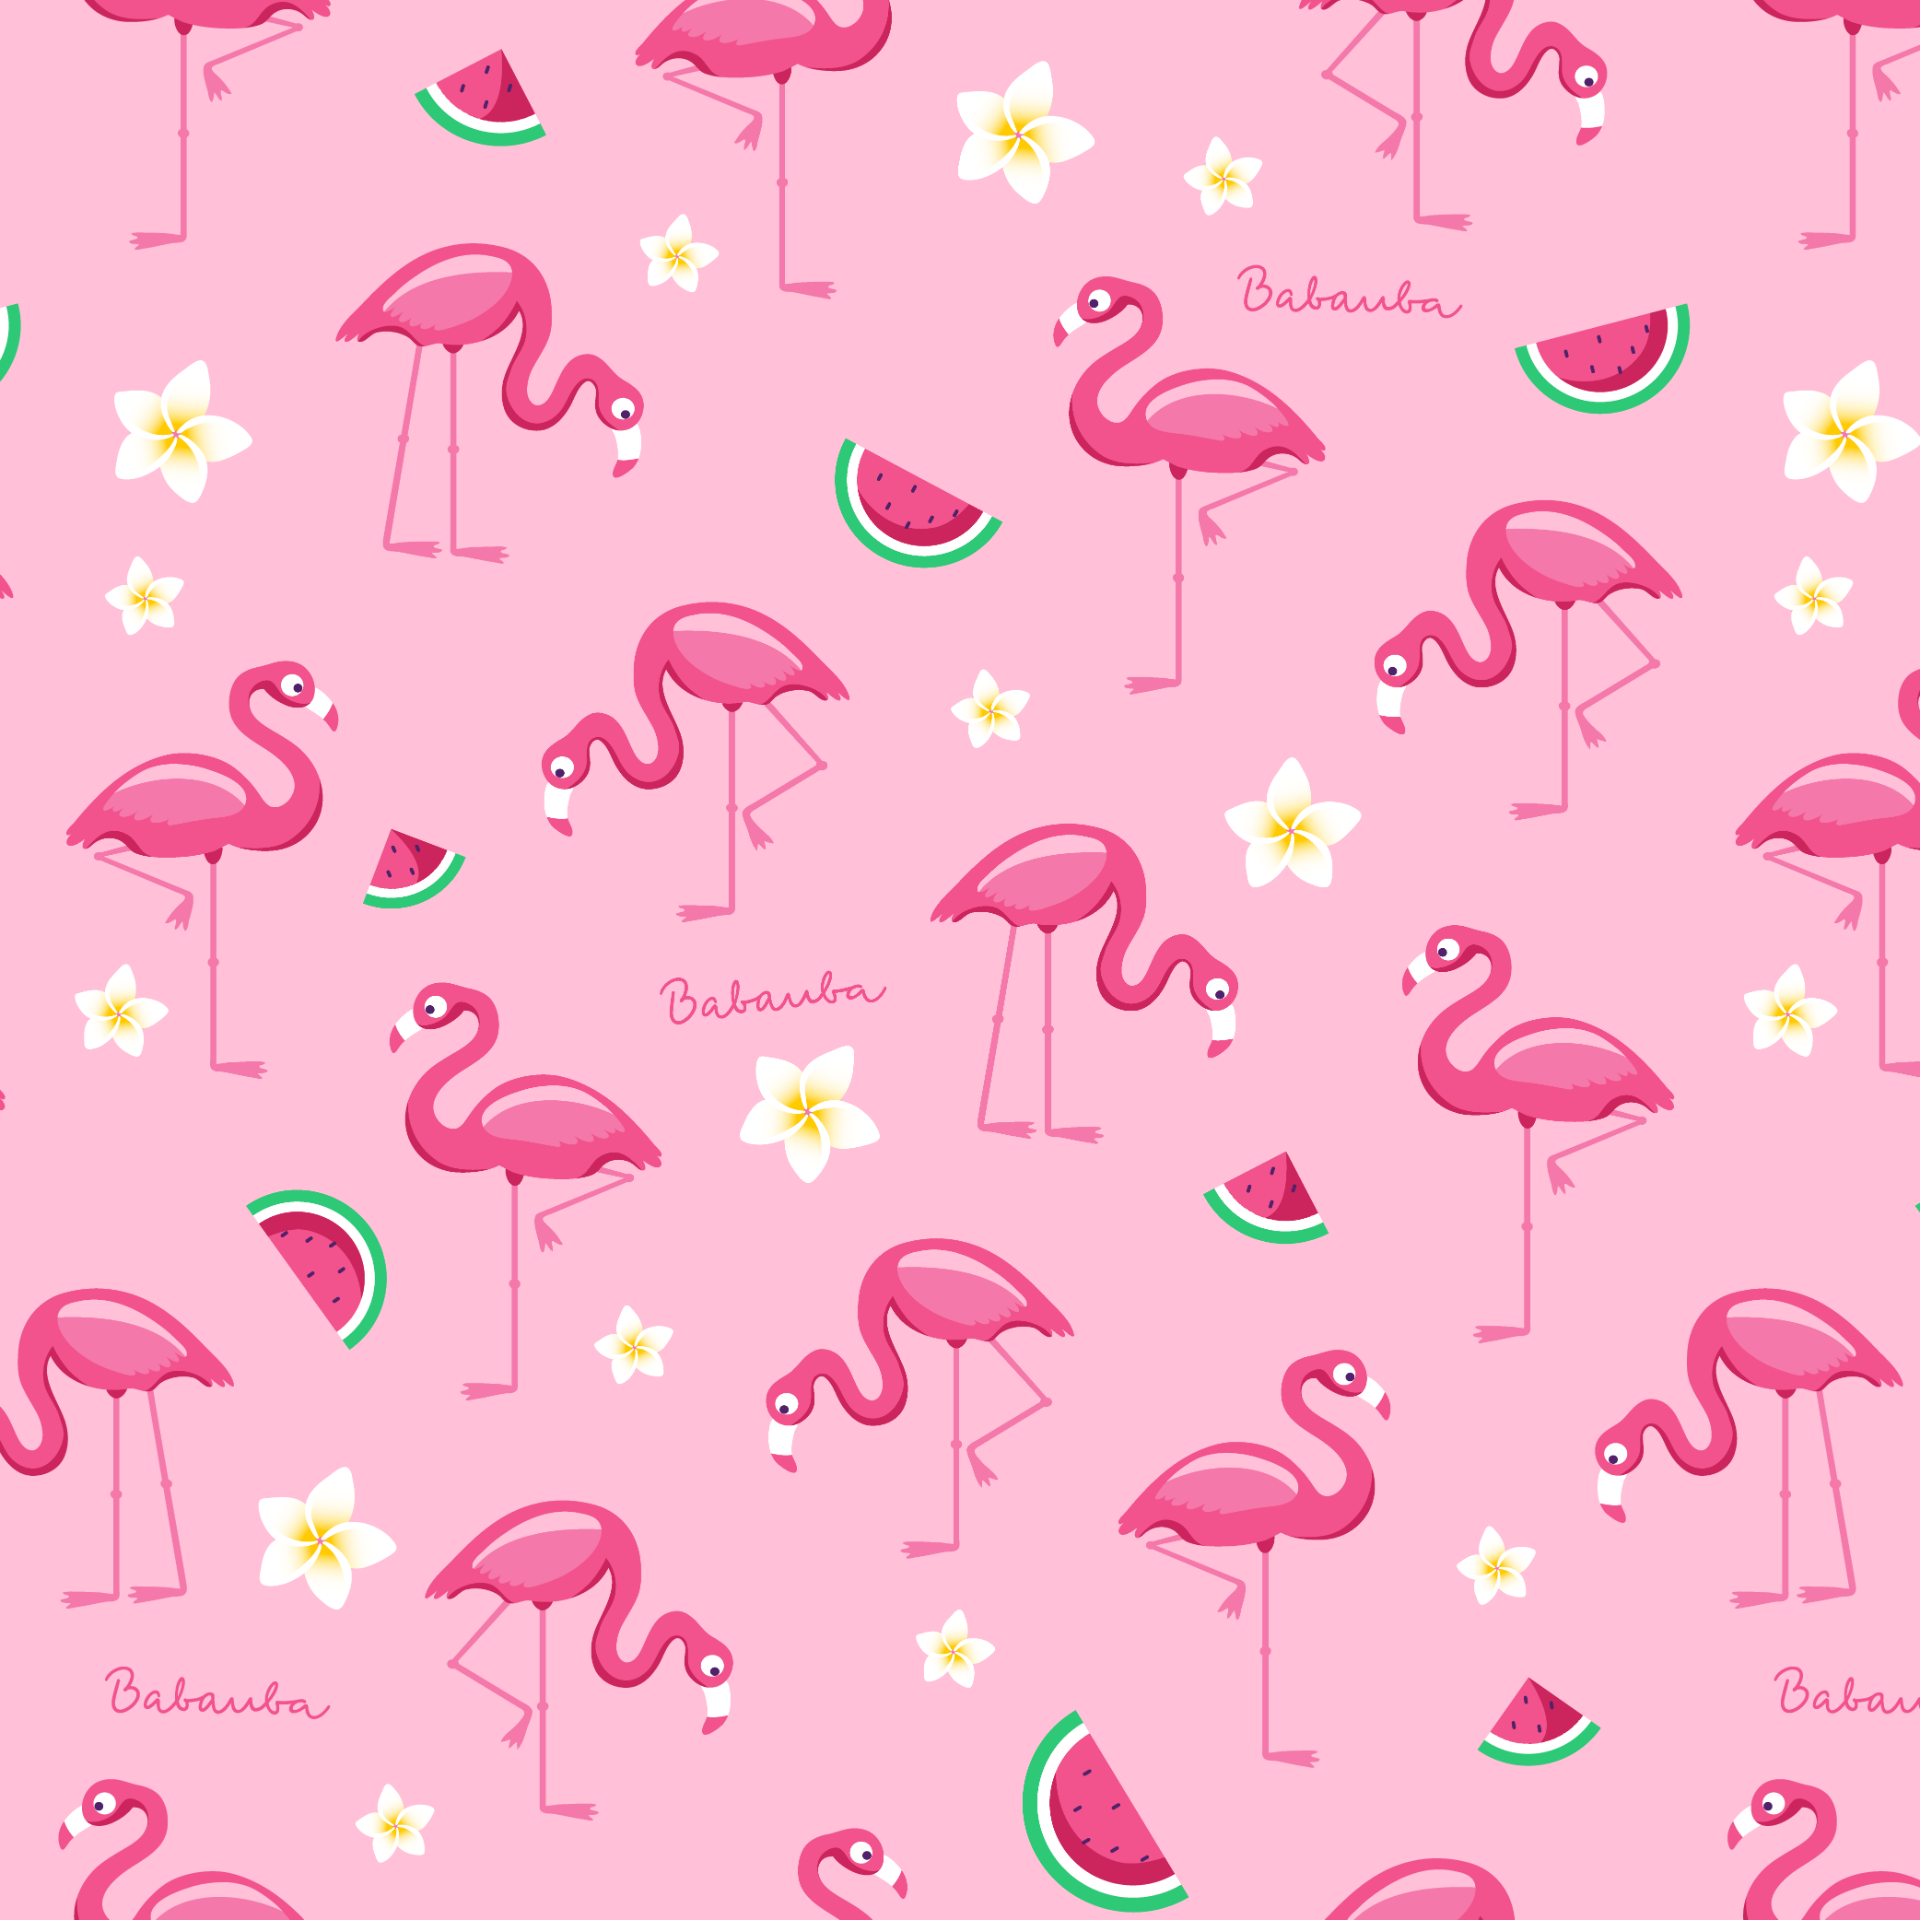 FlamingoFun_1000x1000px